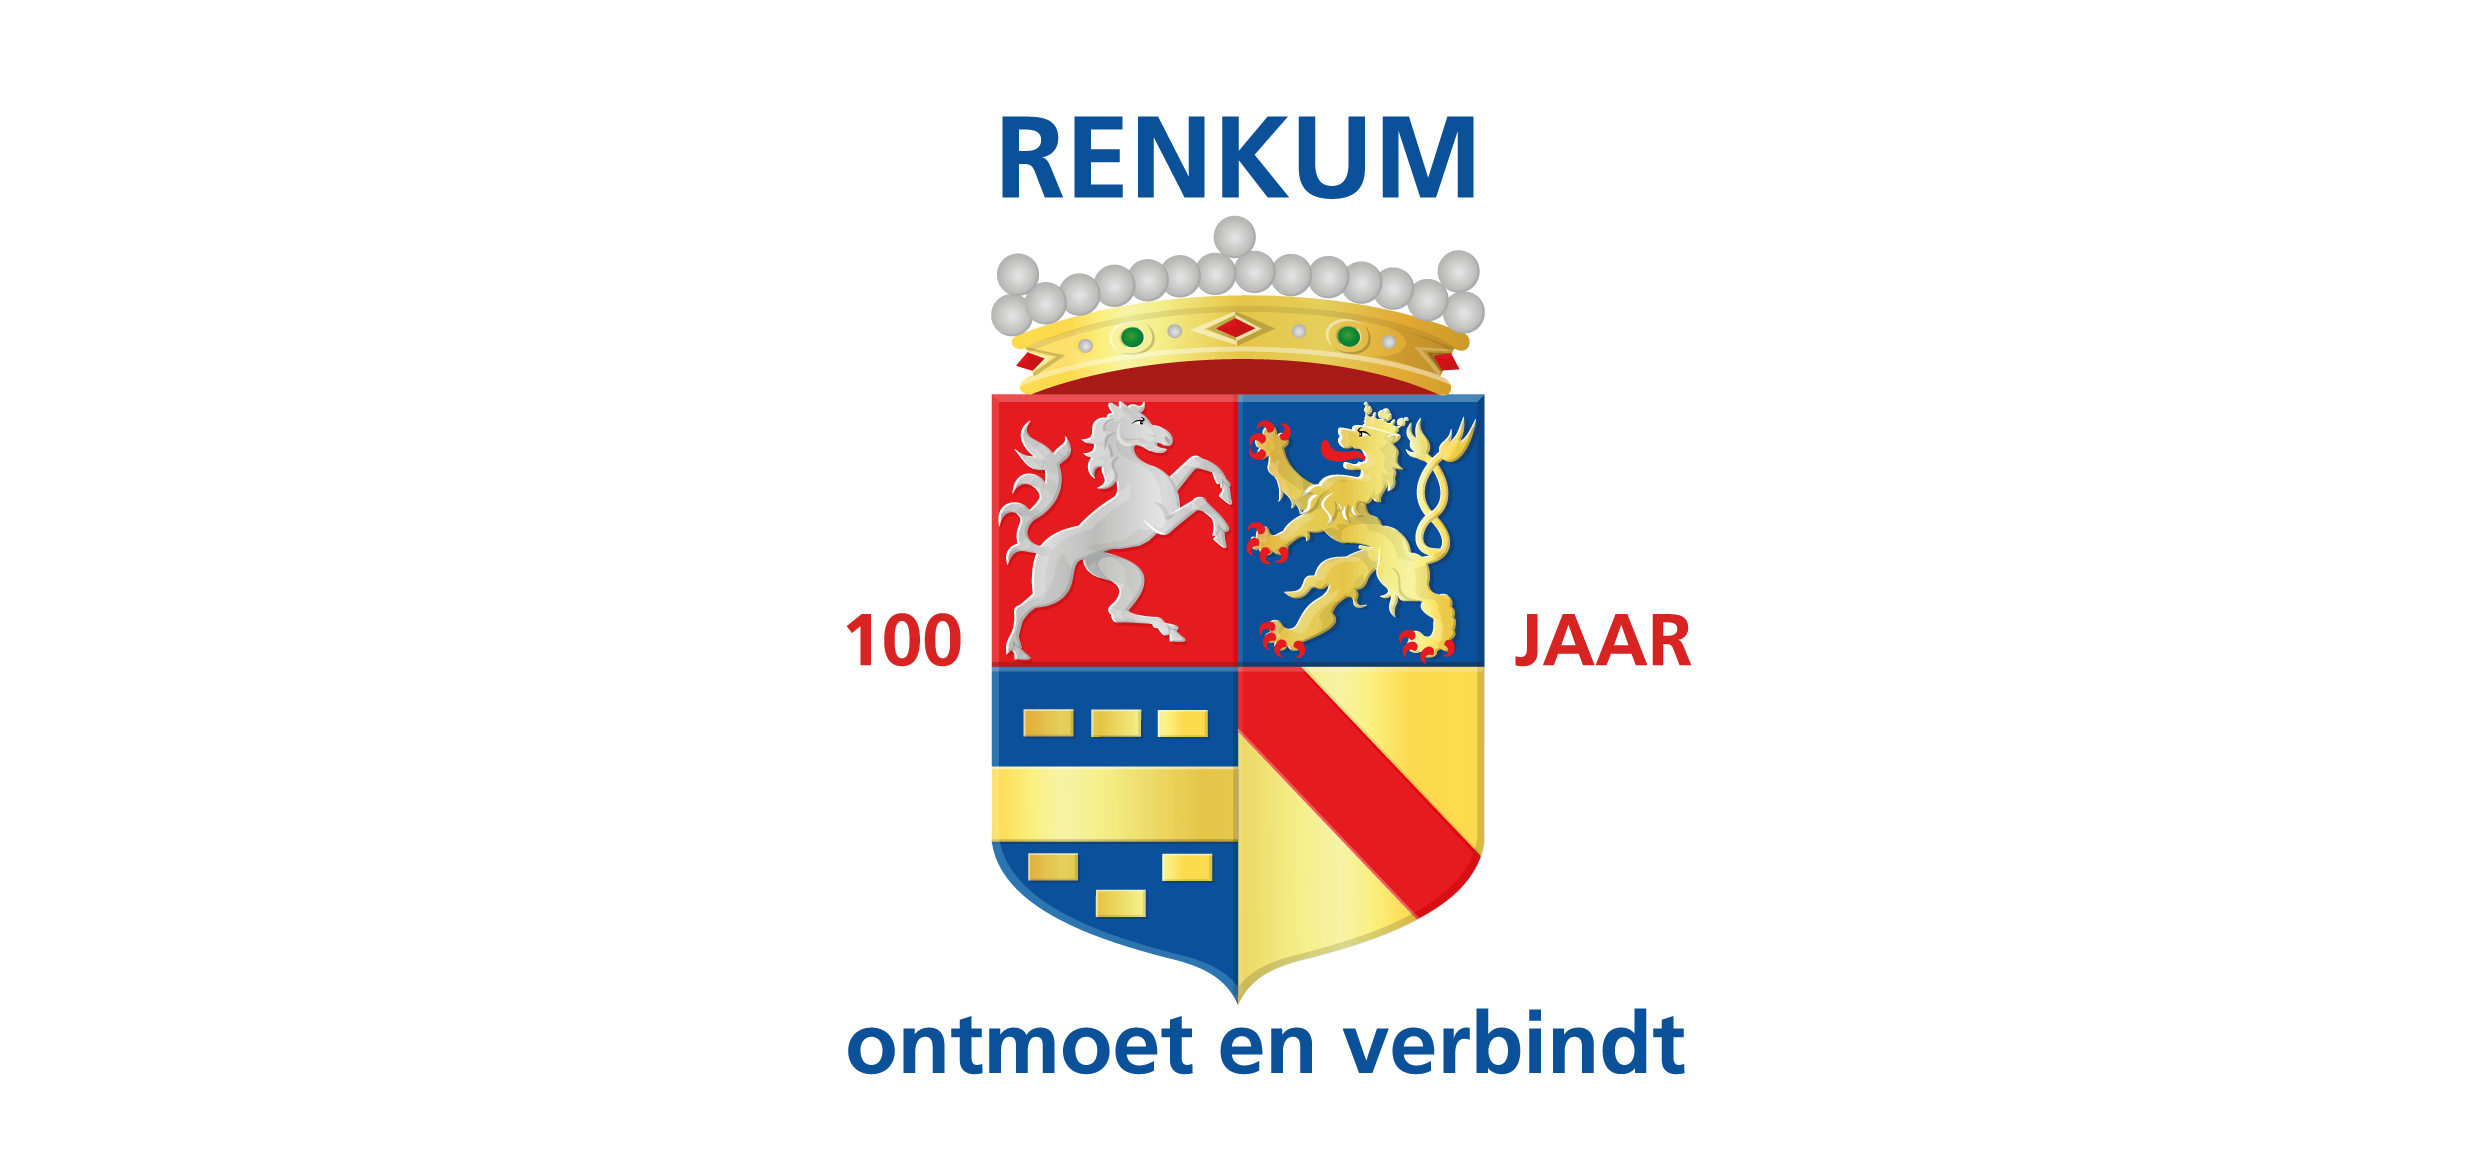 Officiële opening Renkum 100 jaar